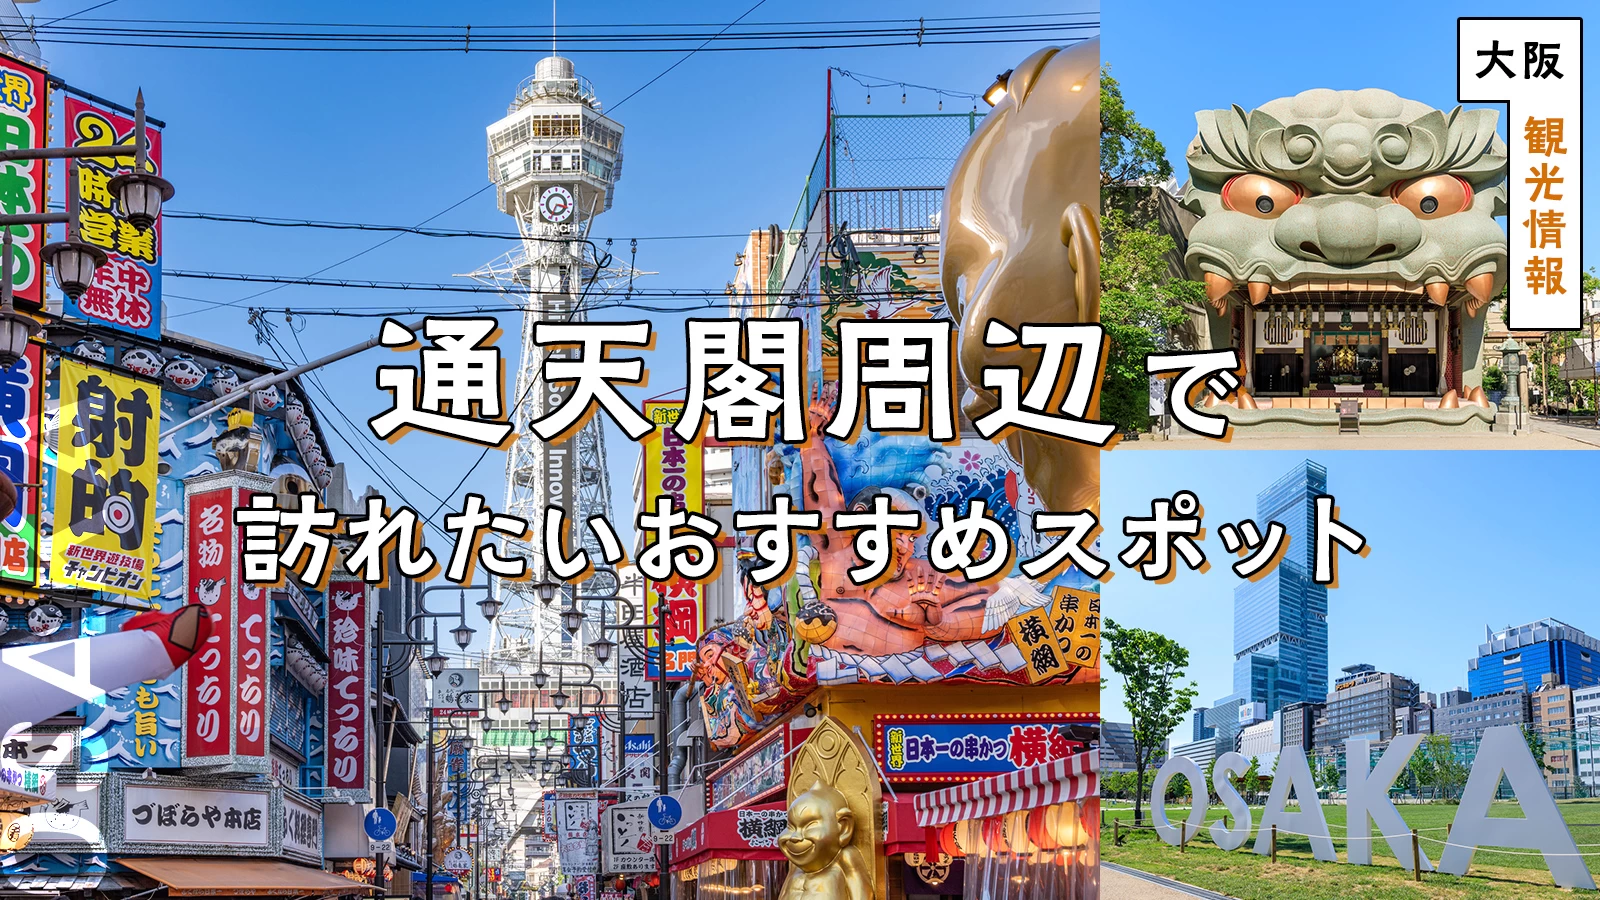 【大阪・観光情報】通天閣周辺で訪れたいおすすめスポット17選